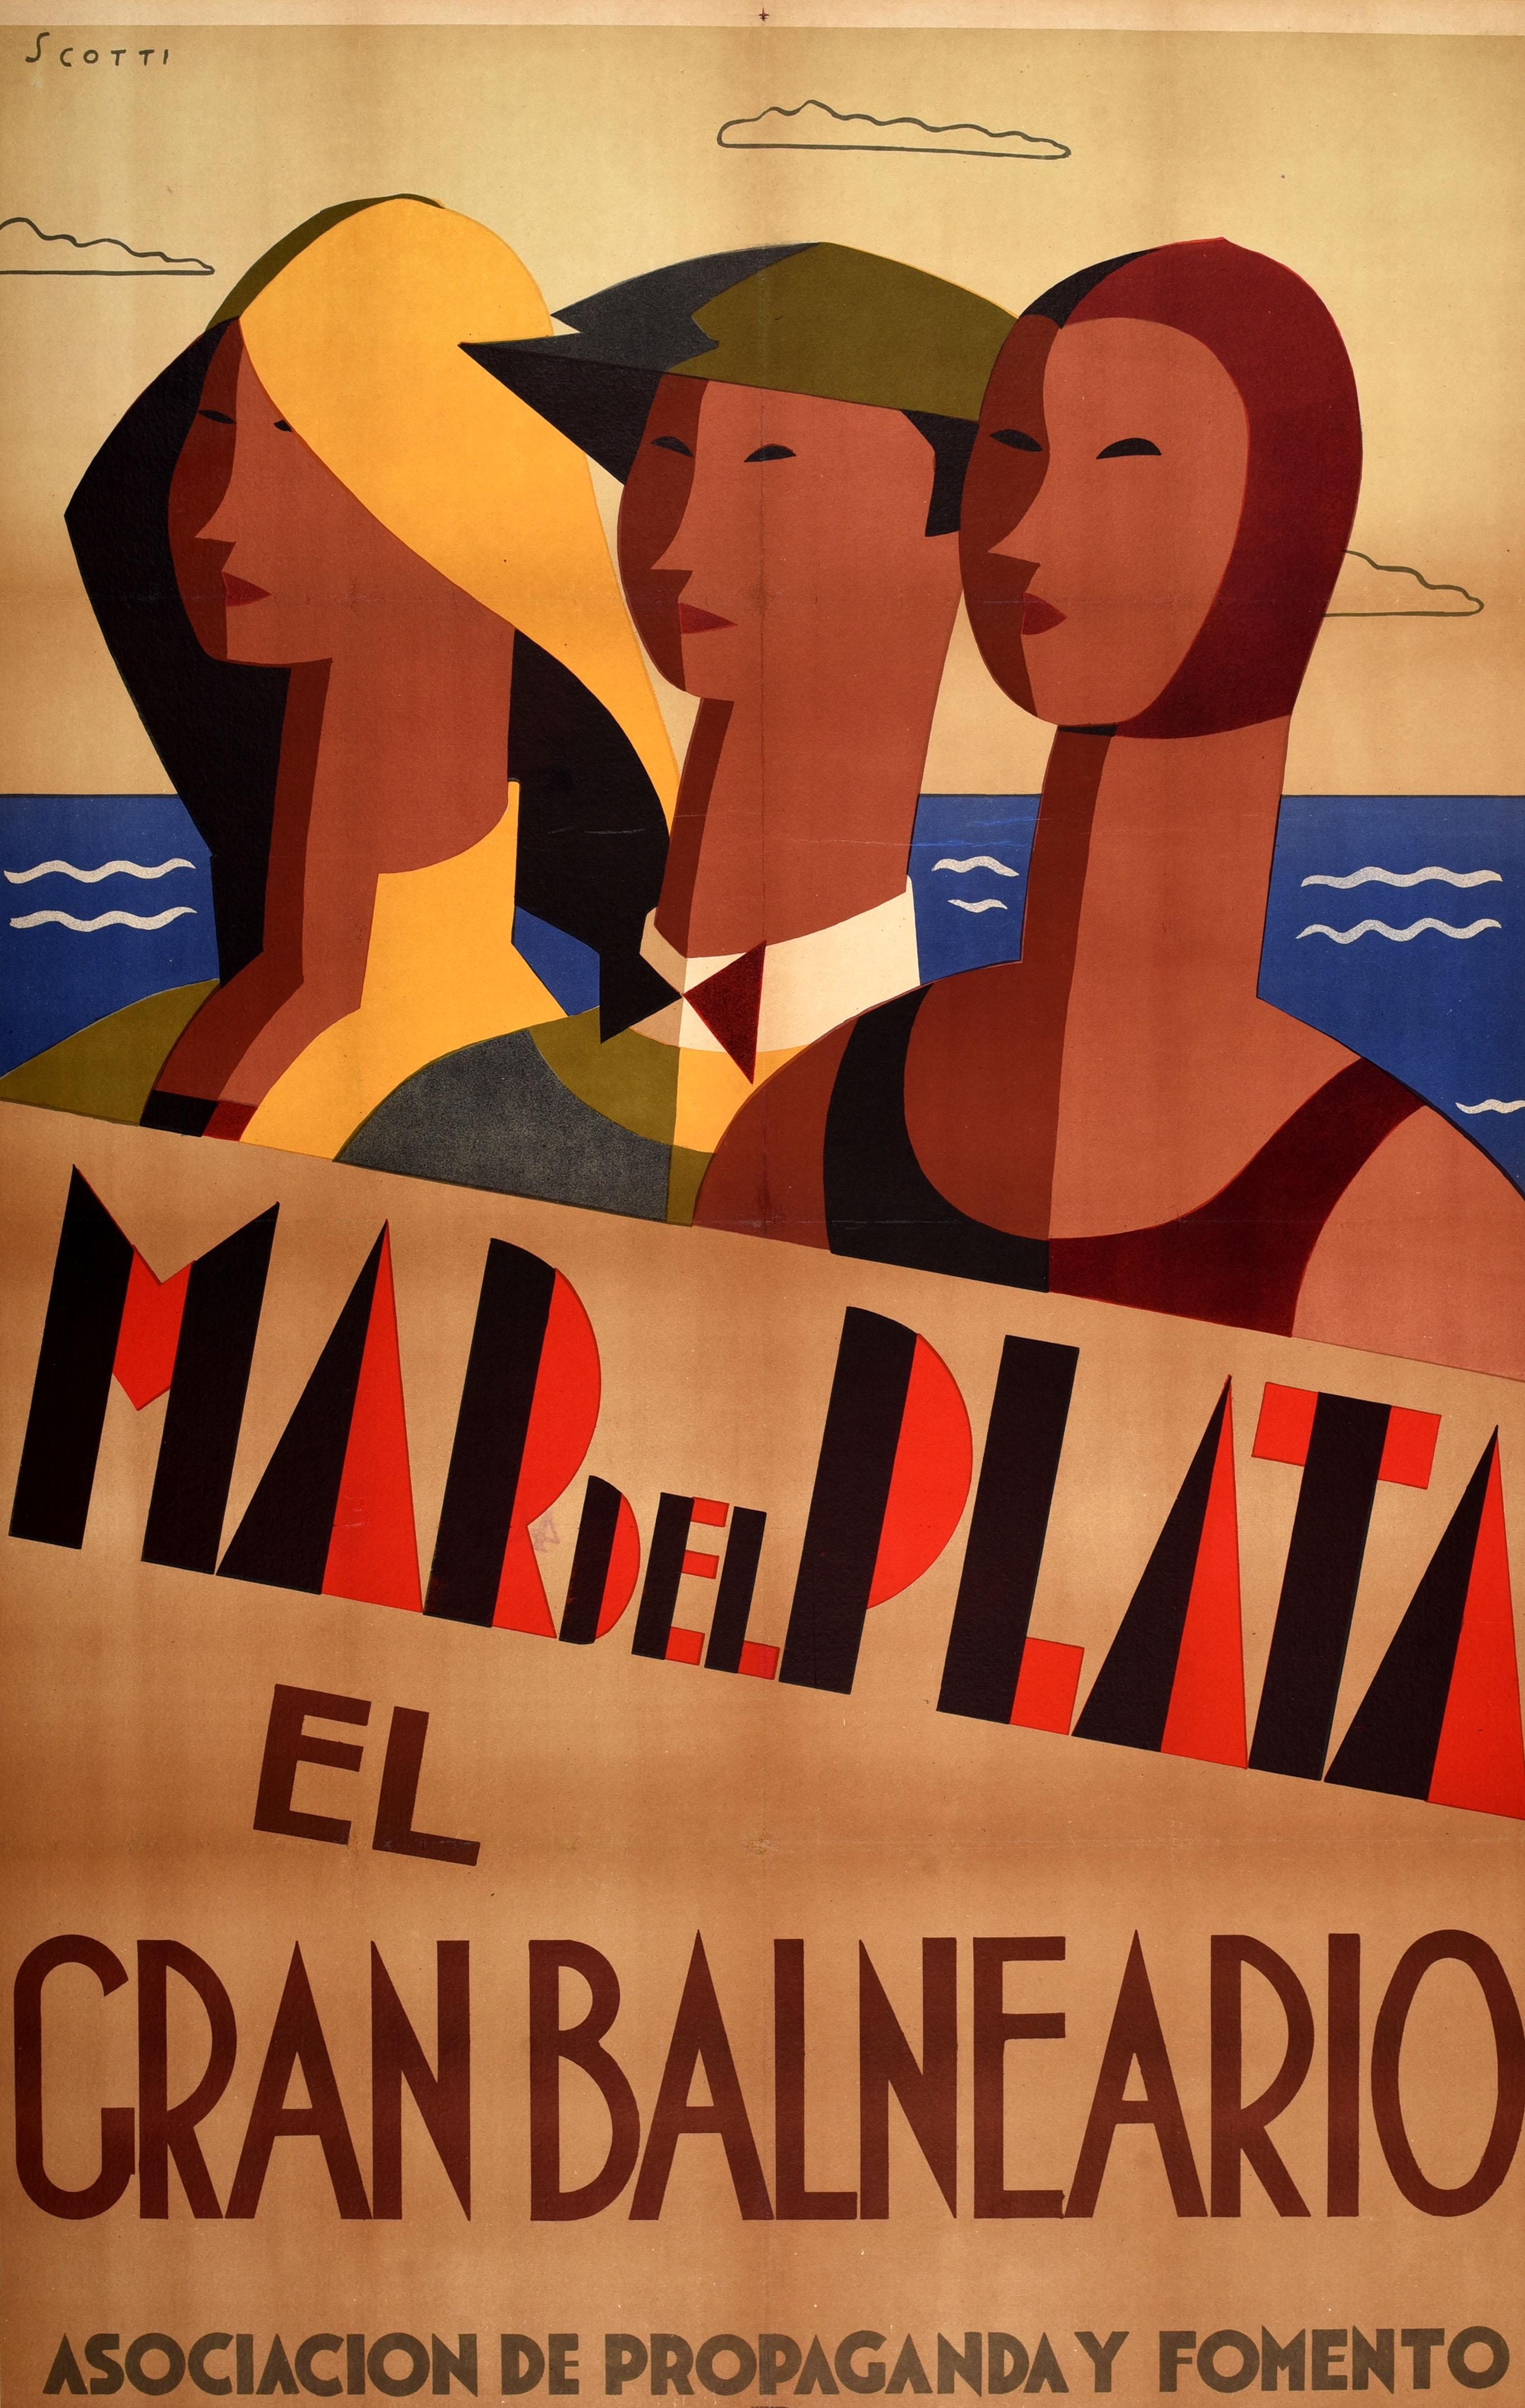 Affiche de voyage vintage originale pour Marli El Gran Balneario / The Great Spa présentant un design Art Deco dynamique du peintre argentin Ernesto Scotti (1901-1957) représentant trois personnes sur une plage avec la mer bleue et des nuages en